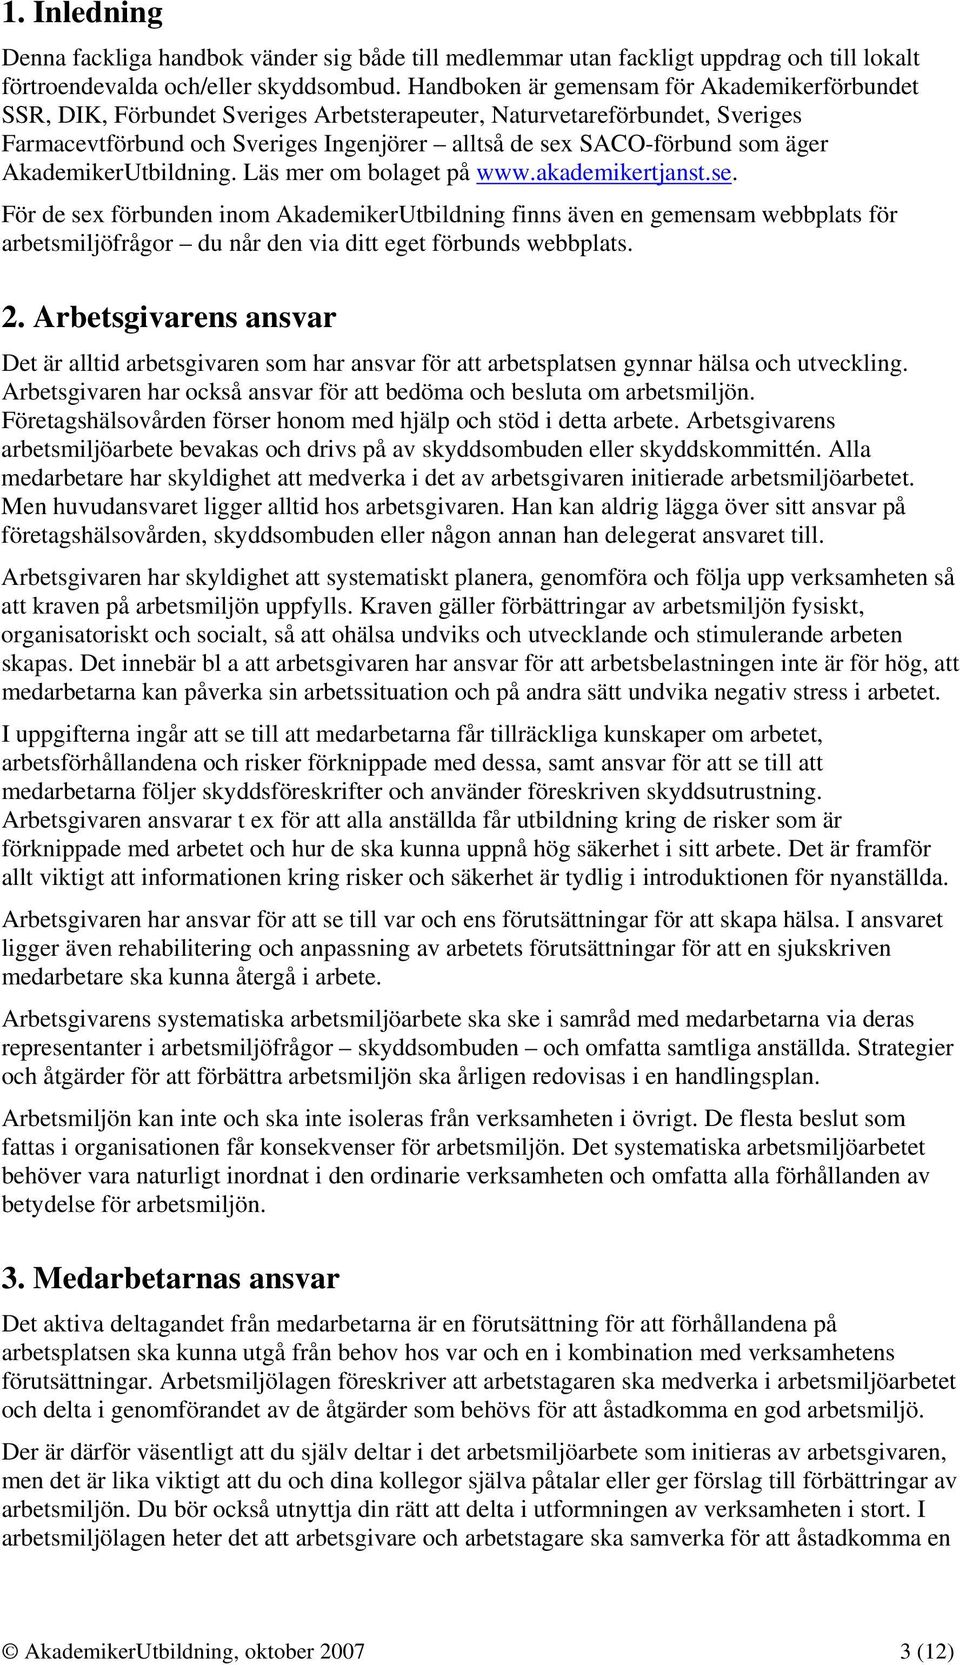 äger AkademikerUtbildning. Läs mer om bolaget på www.akademikertjanst.se.